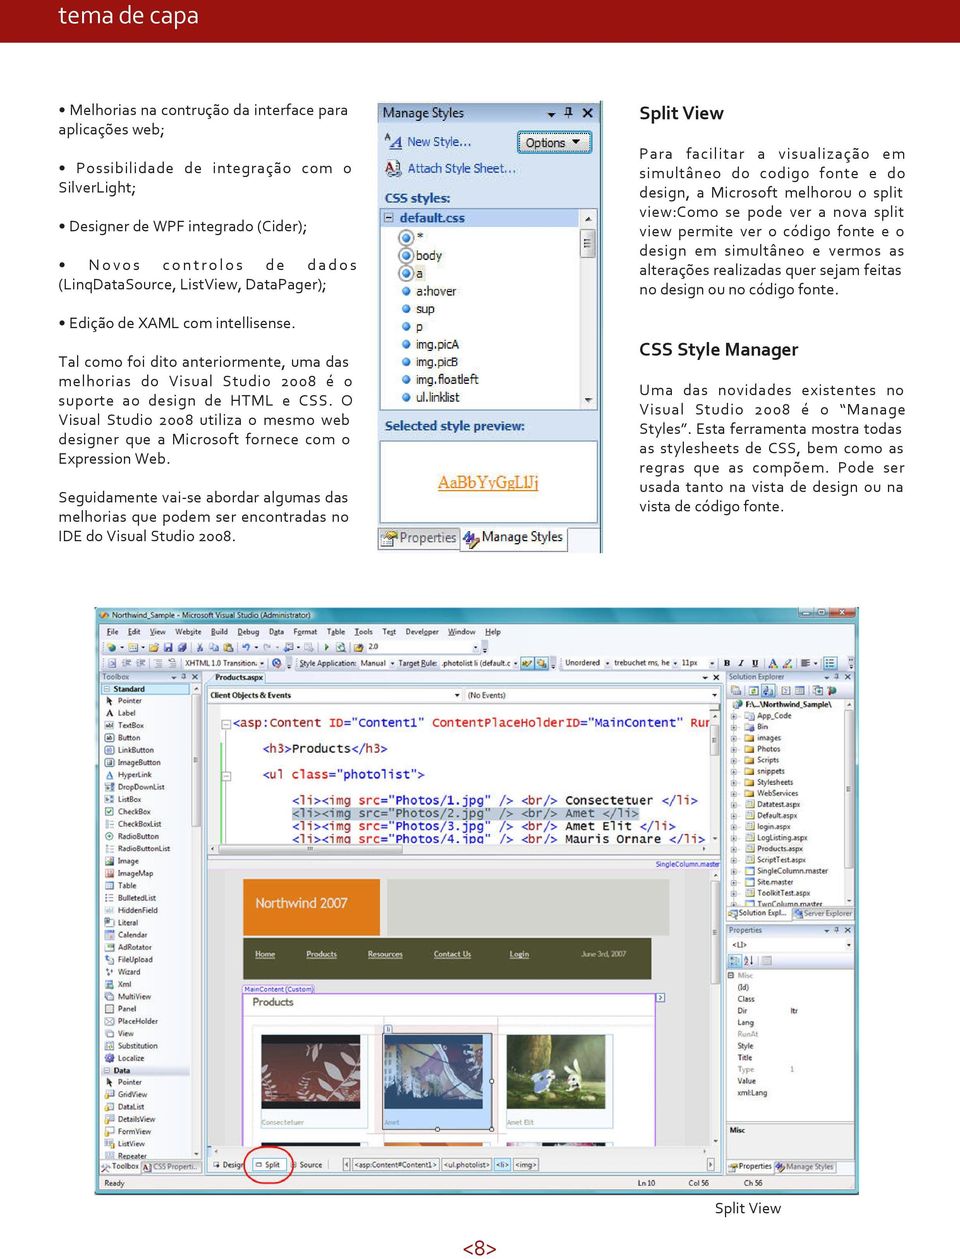 O Visual Studio 2008 utiliza o mesmo web designer que a Microsoft fornece com o Expression Web.